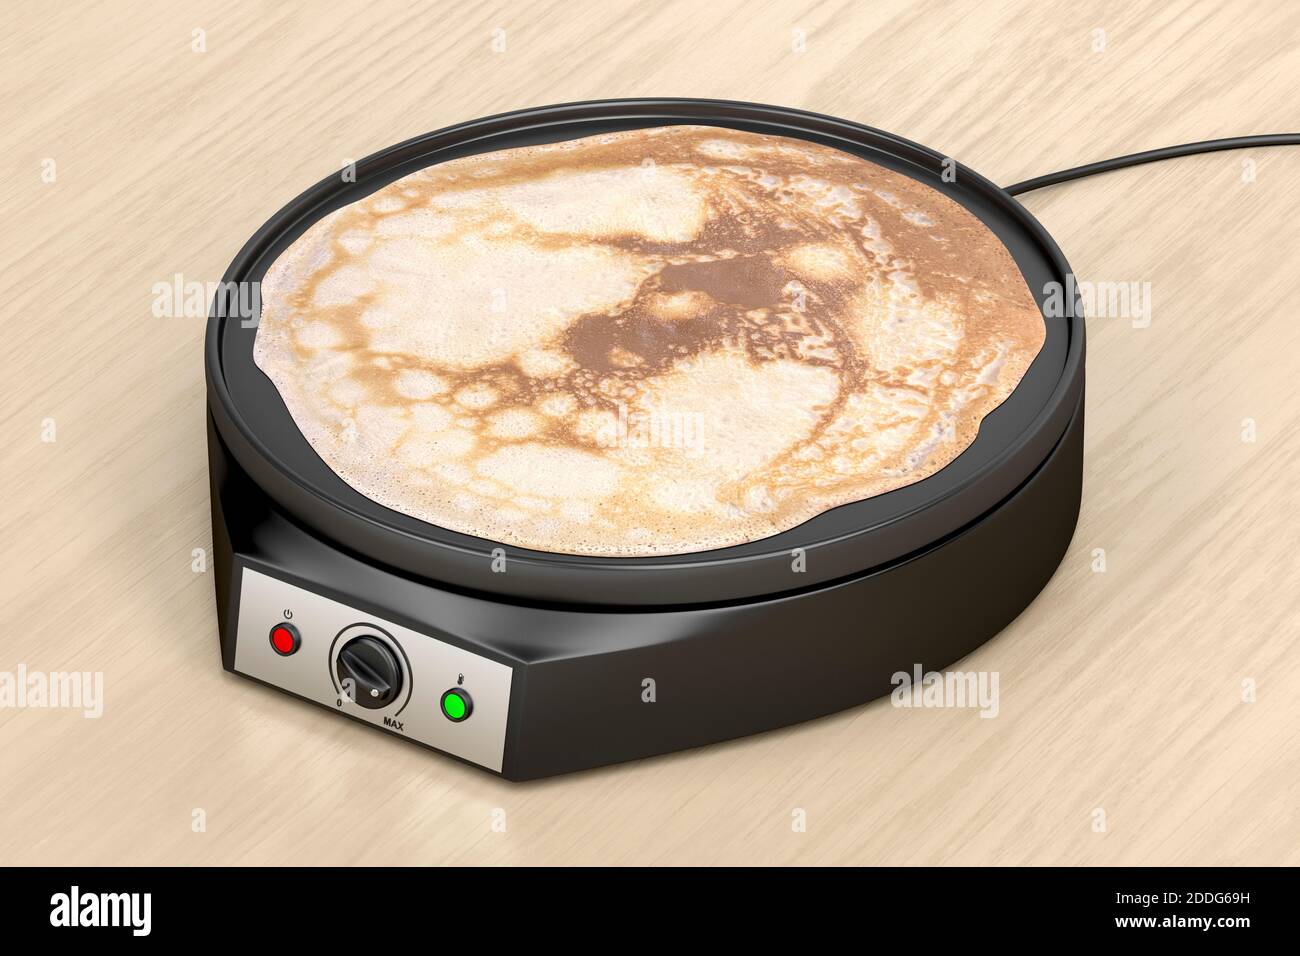 https://c8.alamy.com/comp/2DDG69H/electric-pancake-maker-on-wooden-table-2DDG69H.jpg